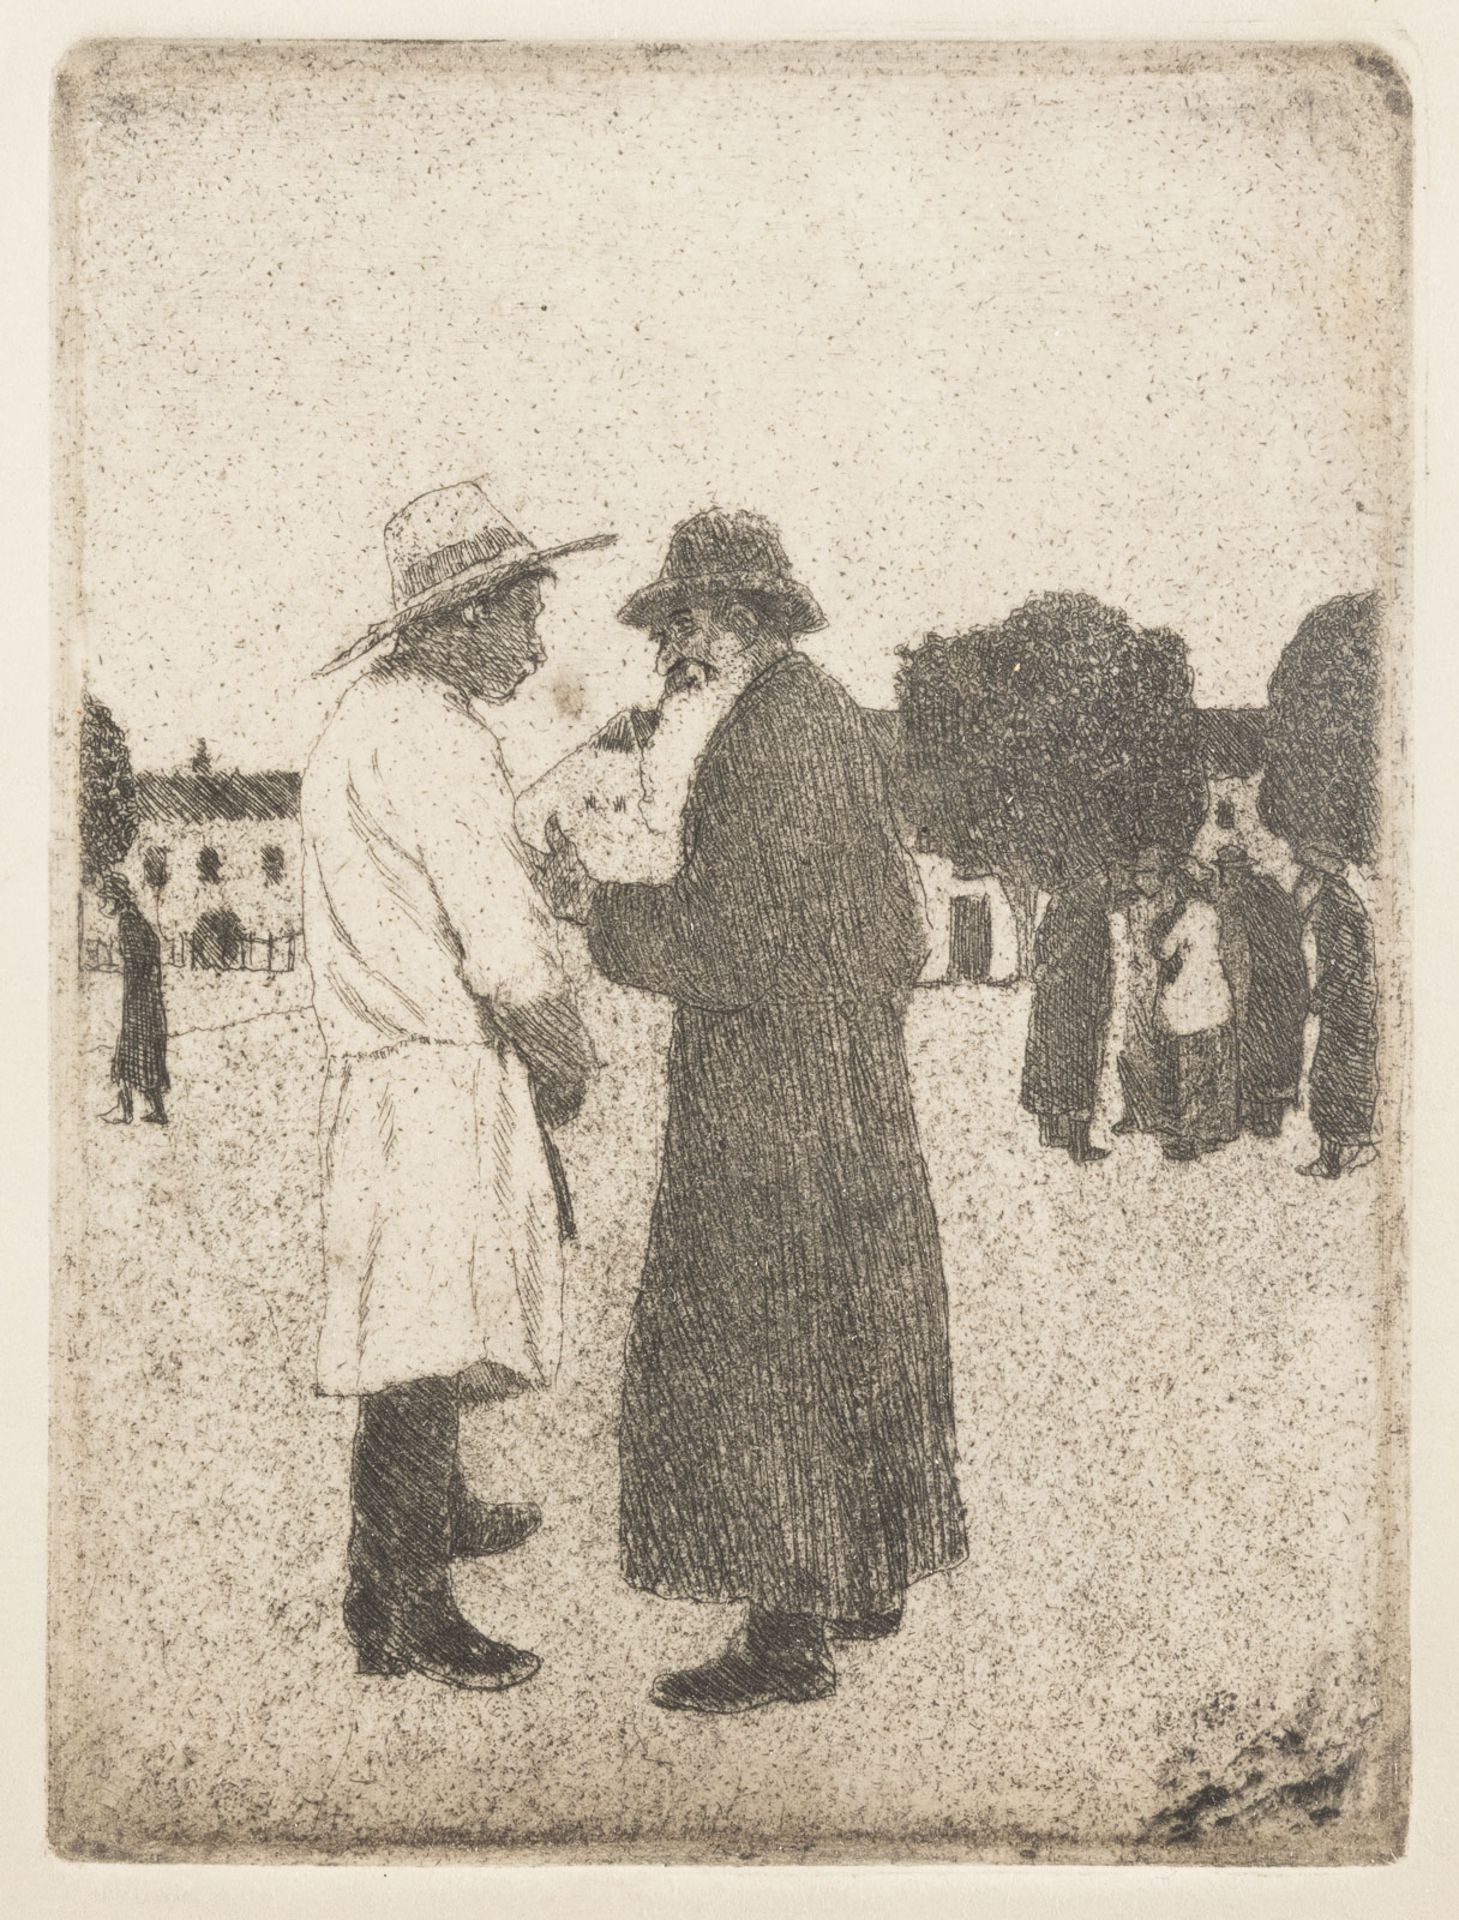 'EIN HANDEL - GALIZIEN' (1899)